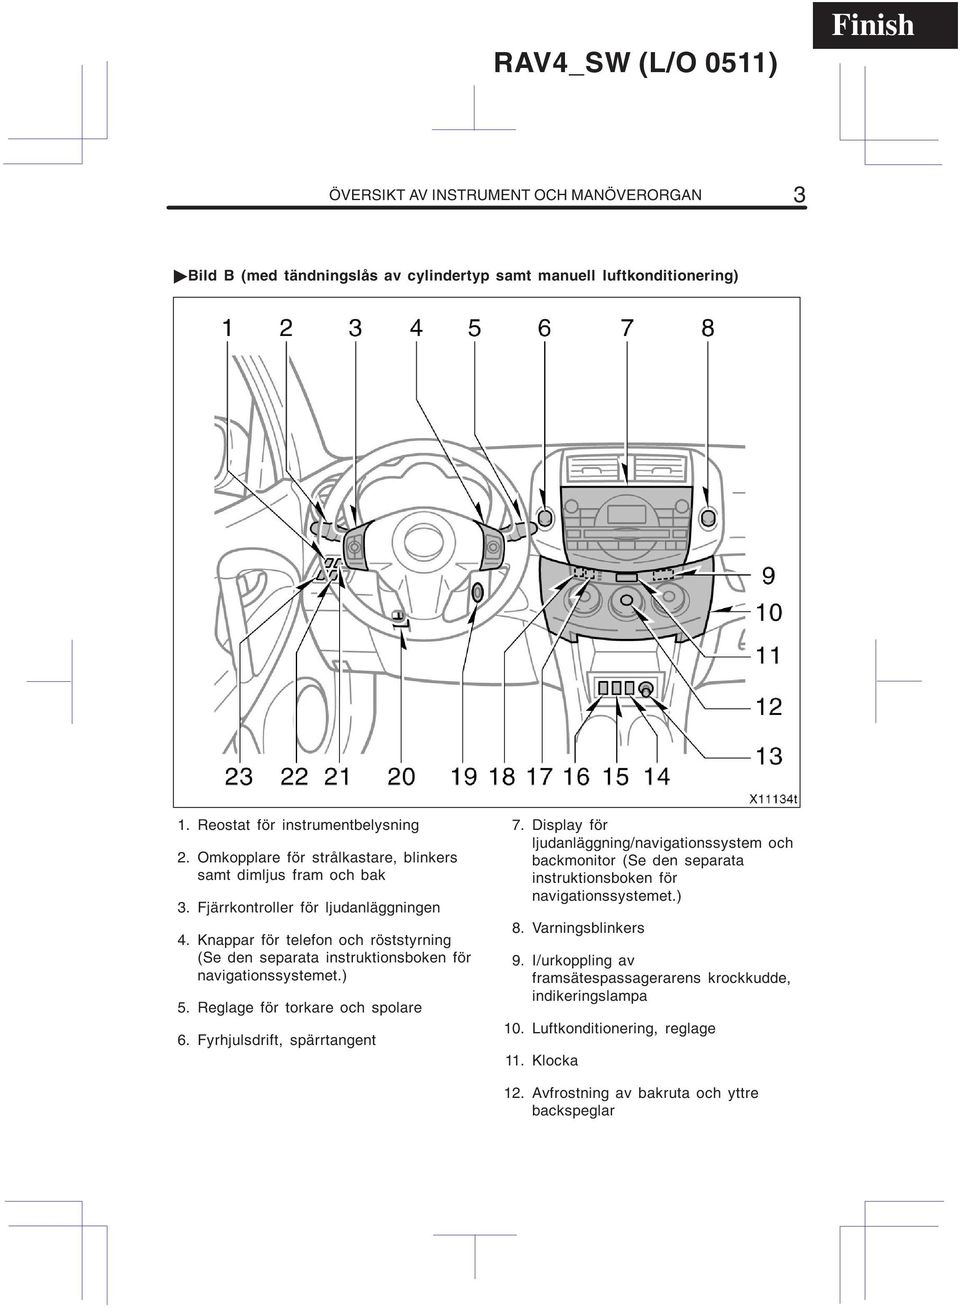 Knappar för telefon och röststyrning (Se den separata instruktionsboken för navigationssystemet.) 5. Reglage för torkare och spolare 6. Fyrhjulsdrift, spärrtangent 7.